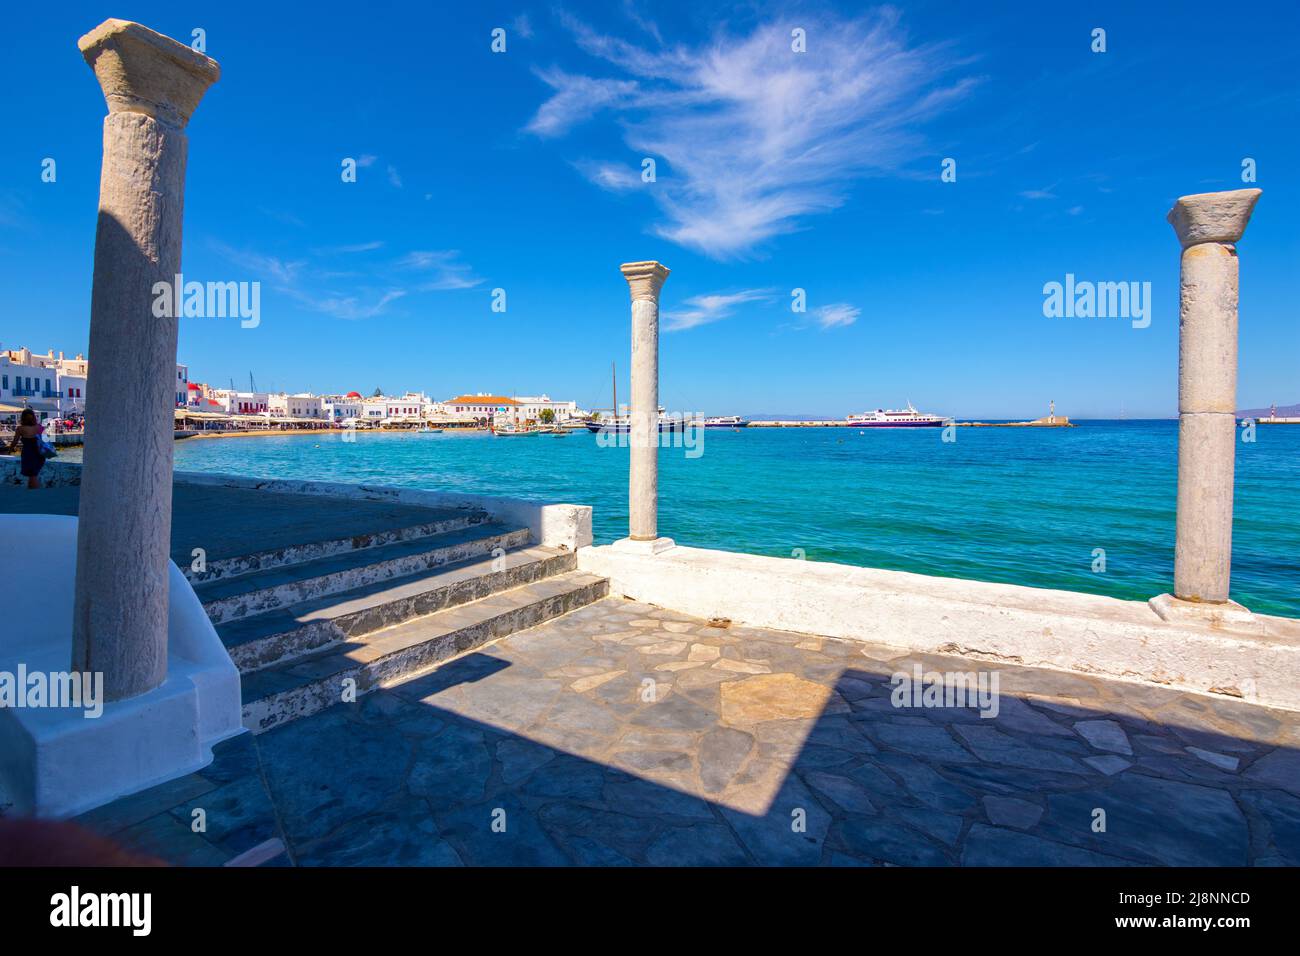 Mykonos town in Mykonos island, Greece Stock Photo